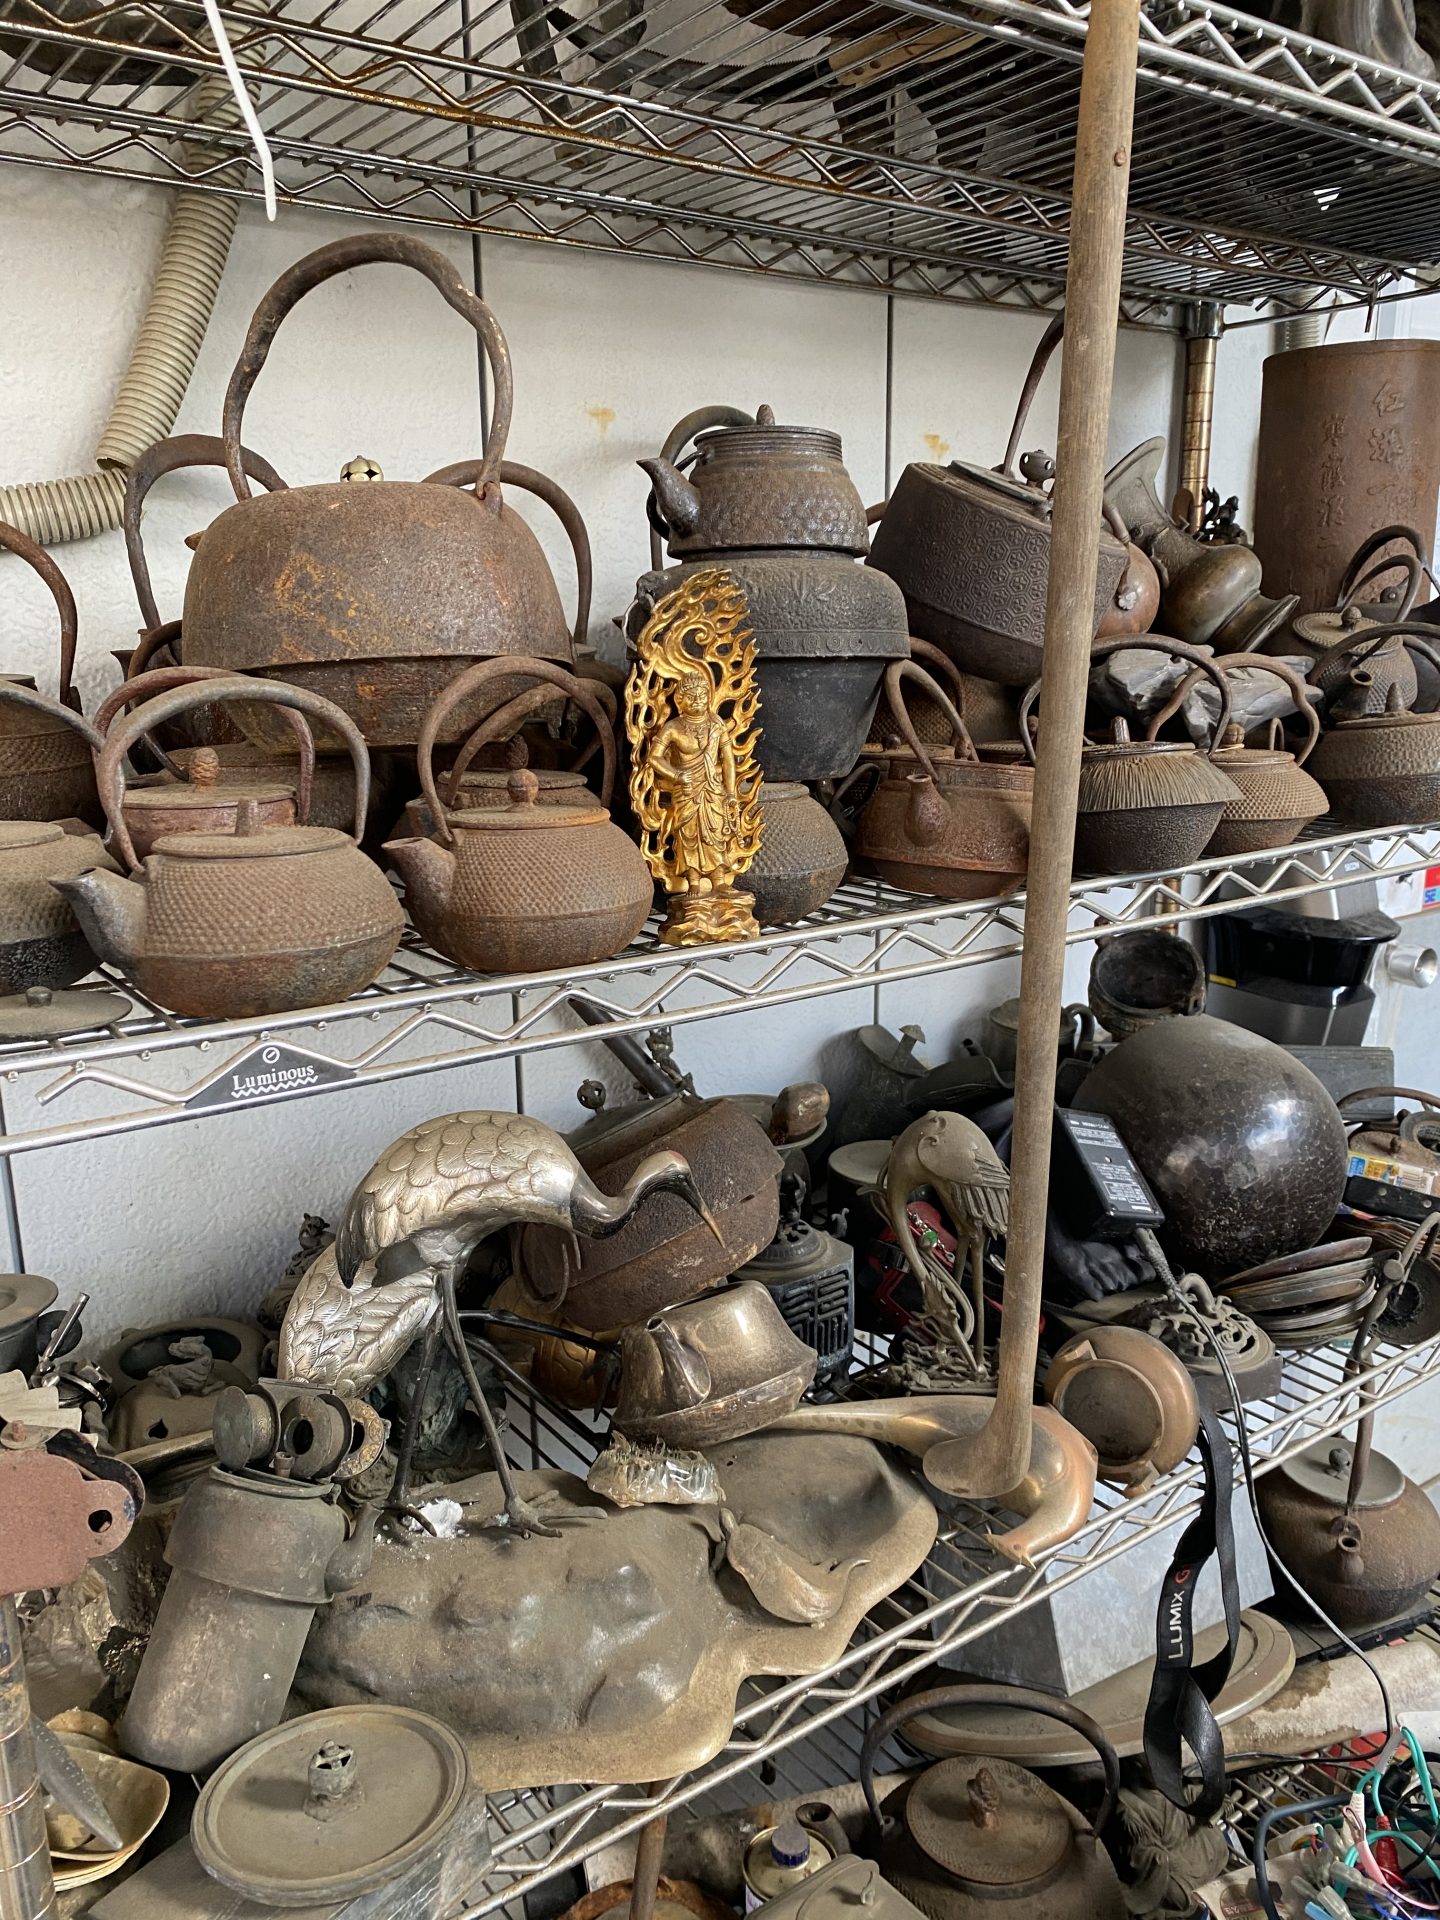 京都府京都市にて 鉄瓶 銅器 骨董品の買い付けに行ってきました